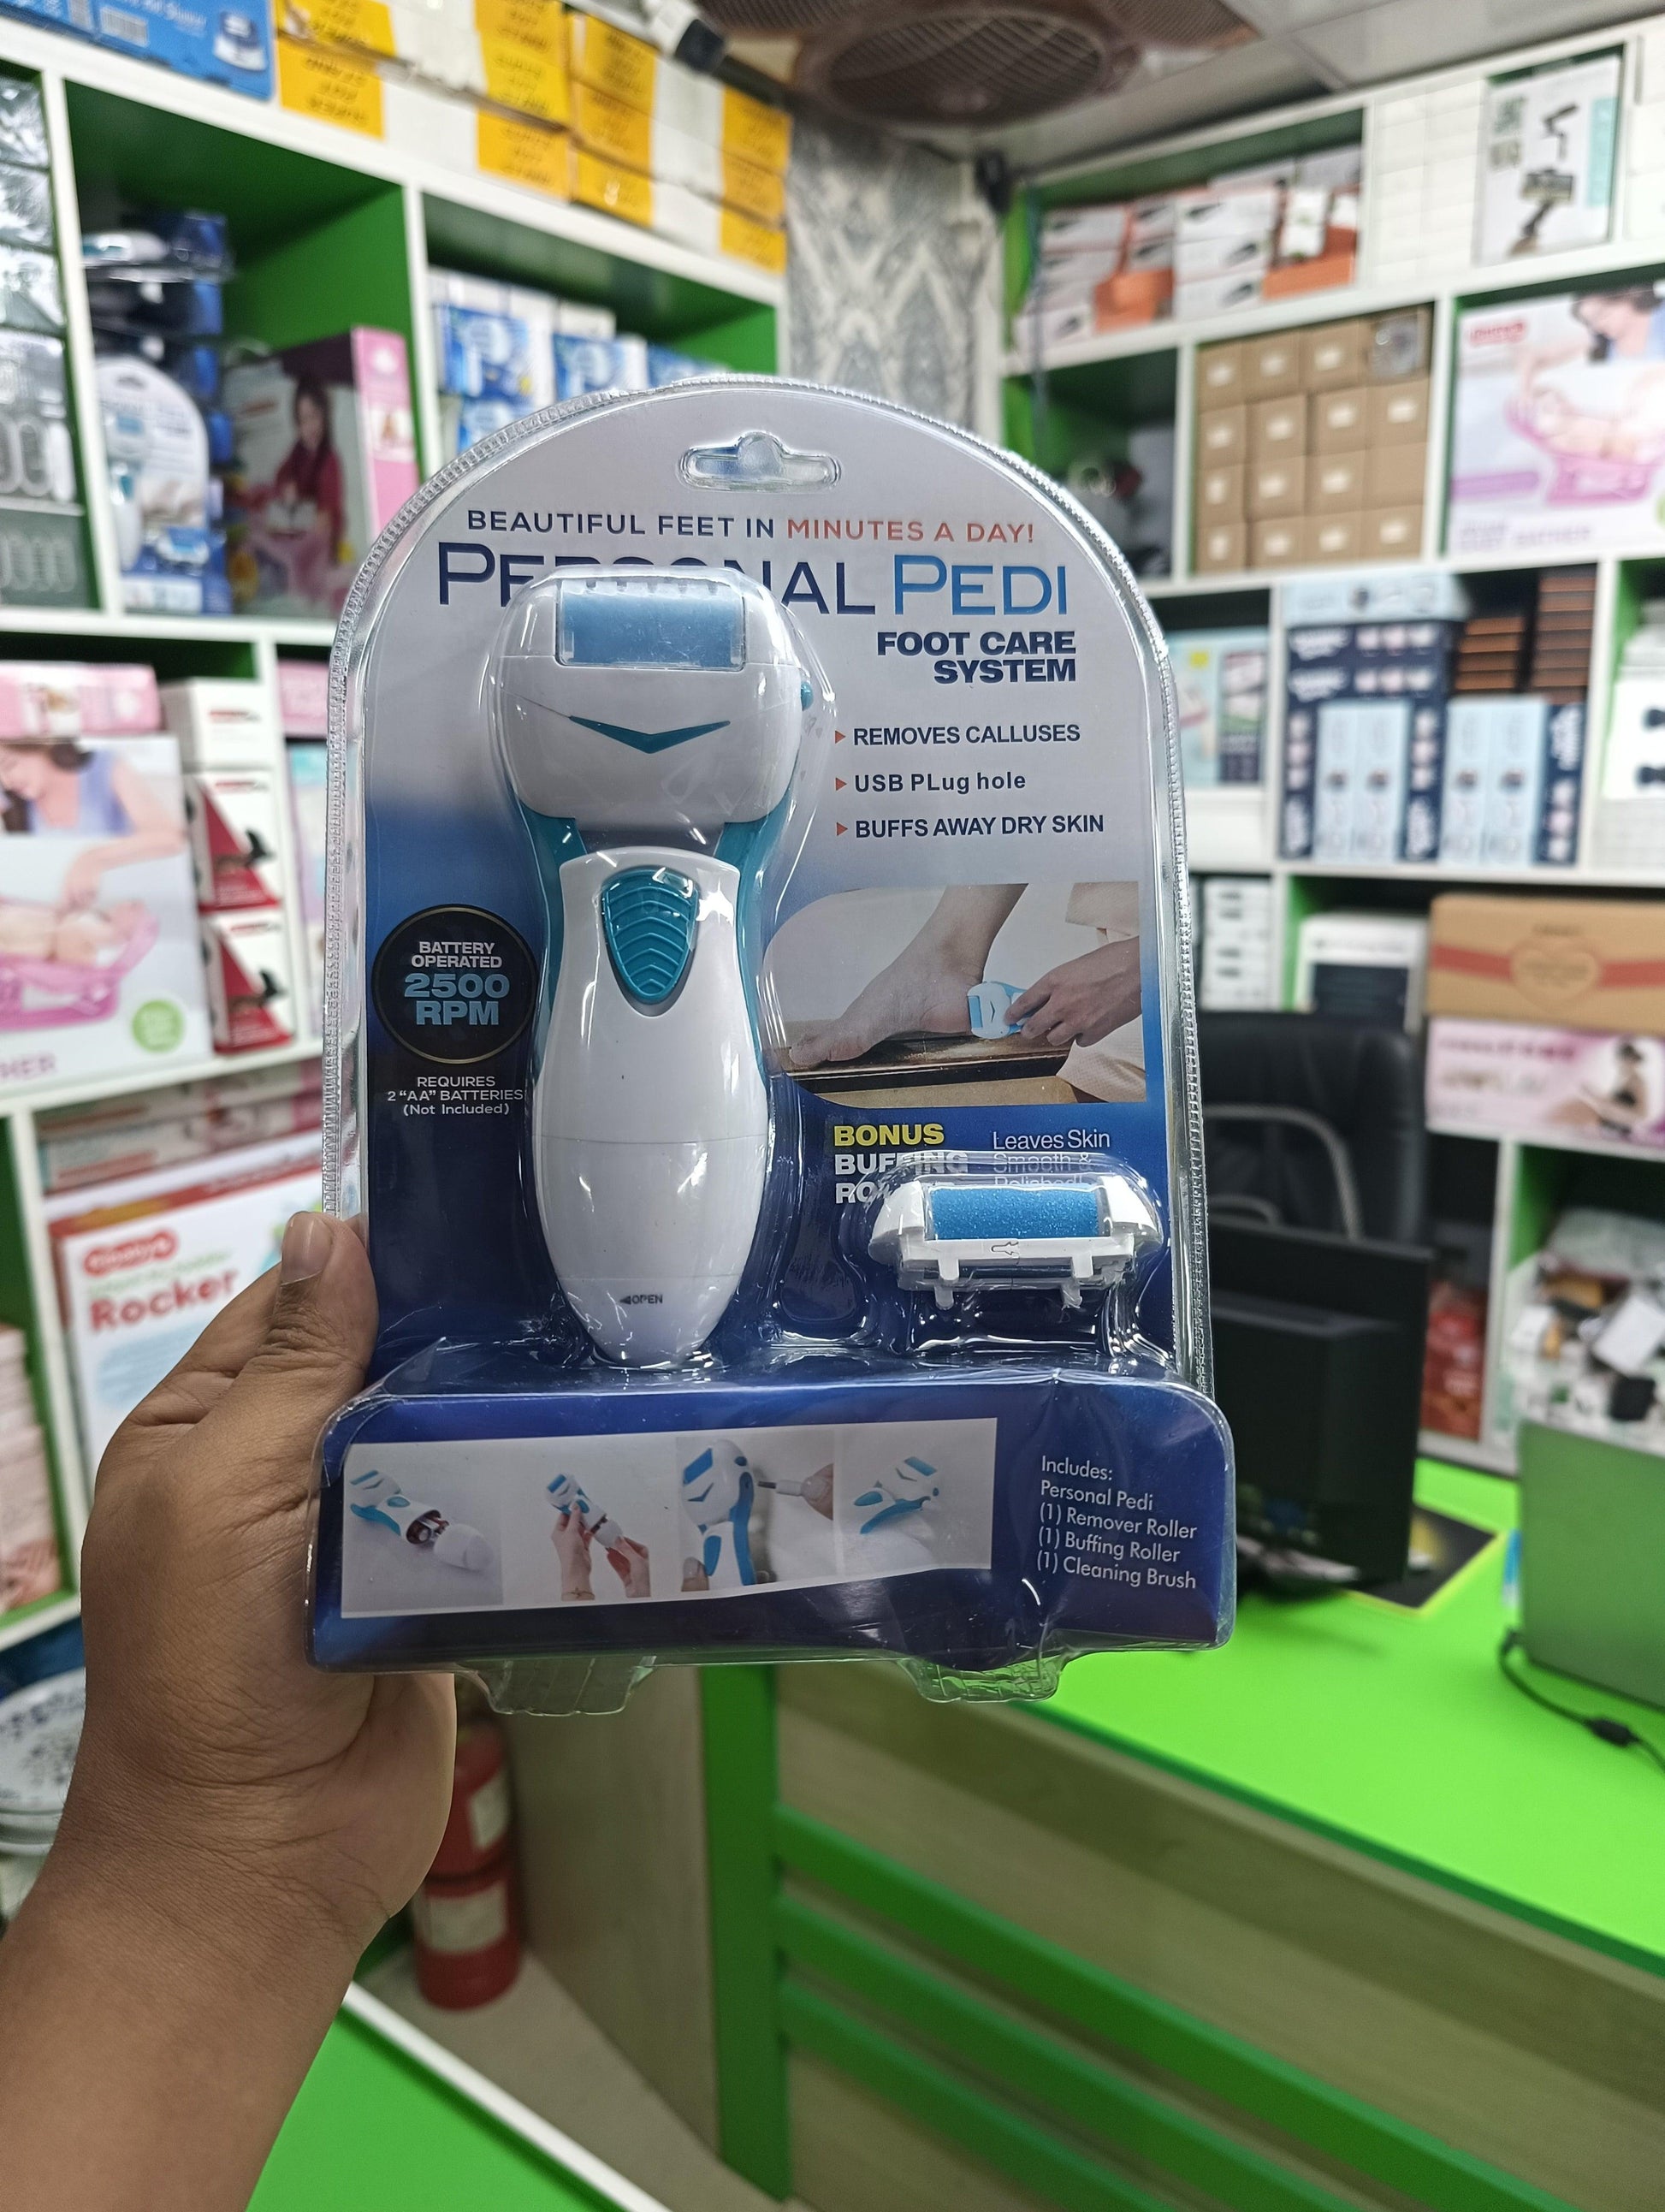 Foot care pedicure device - HT Bazar